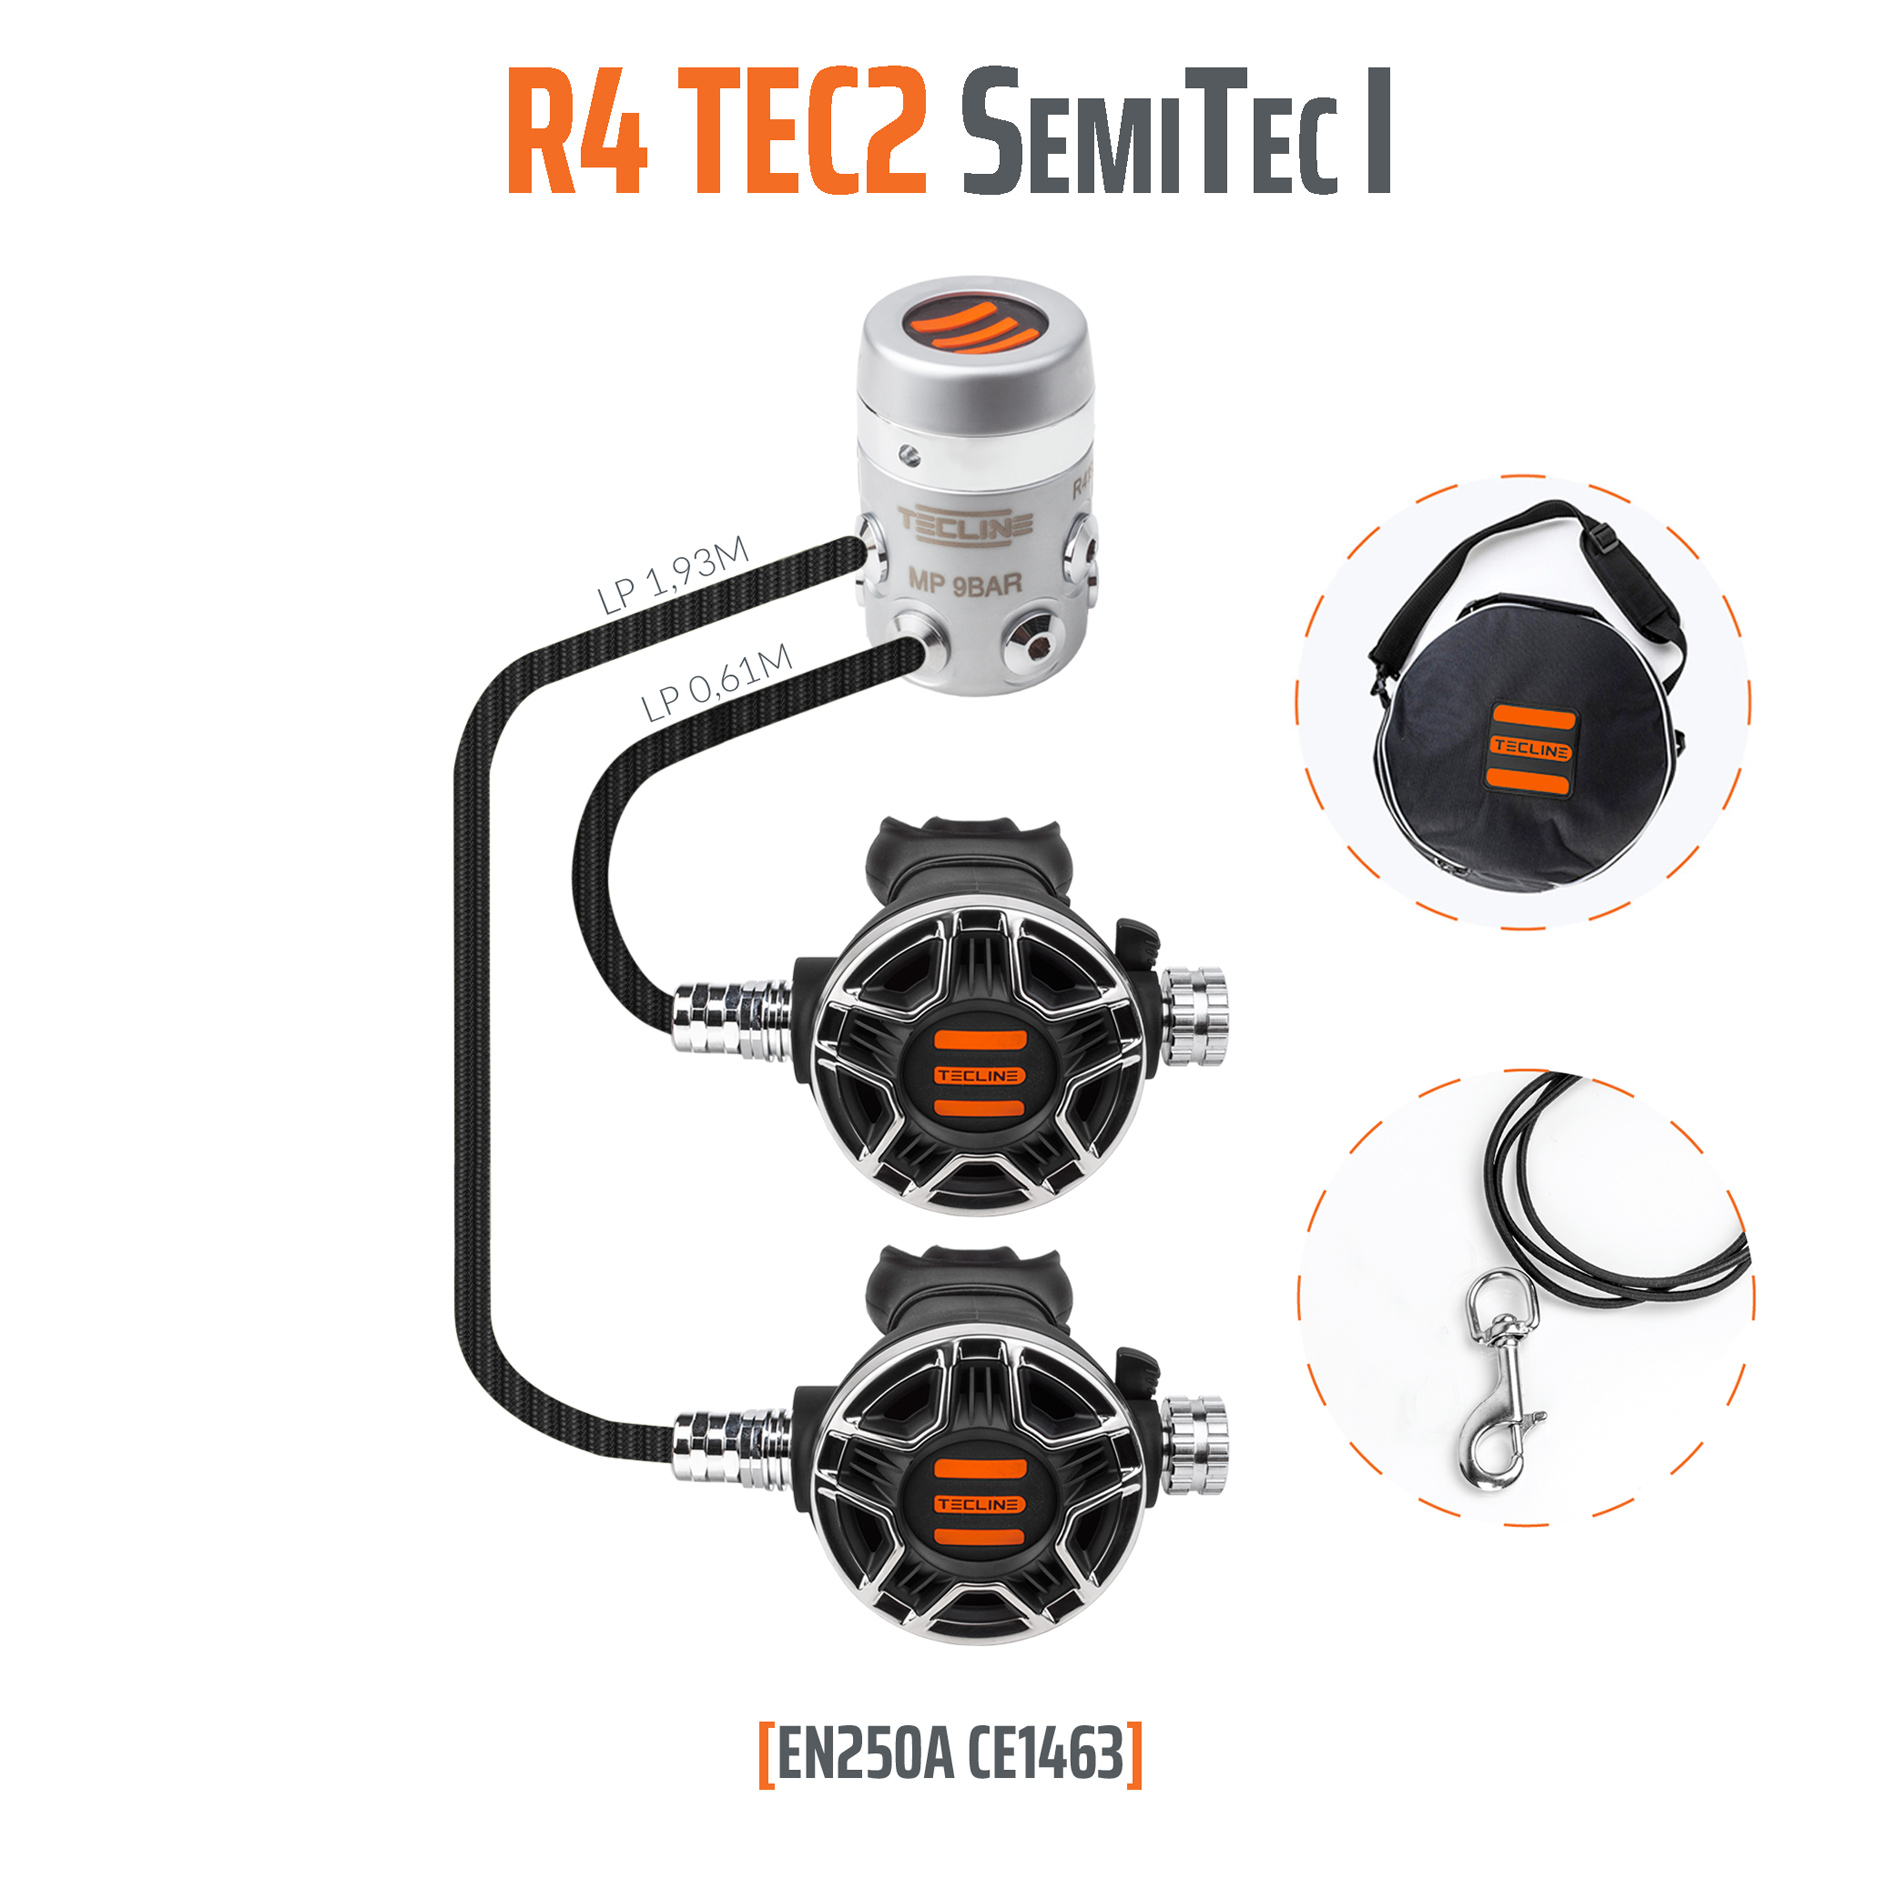 Tecline Regulator R4 TEC2 SemiTec I set – EN250A